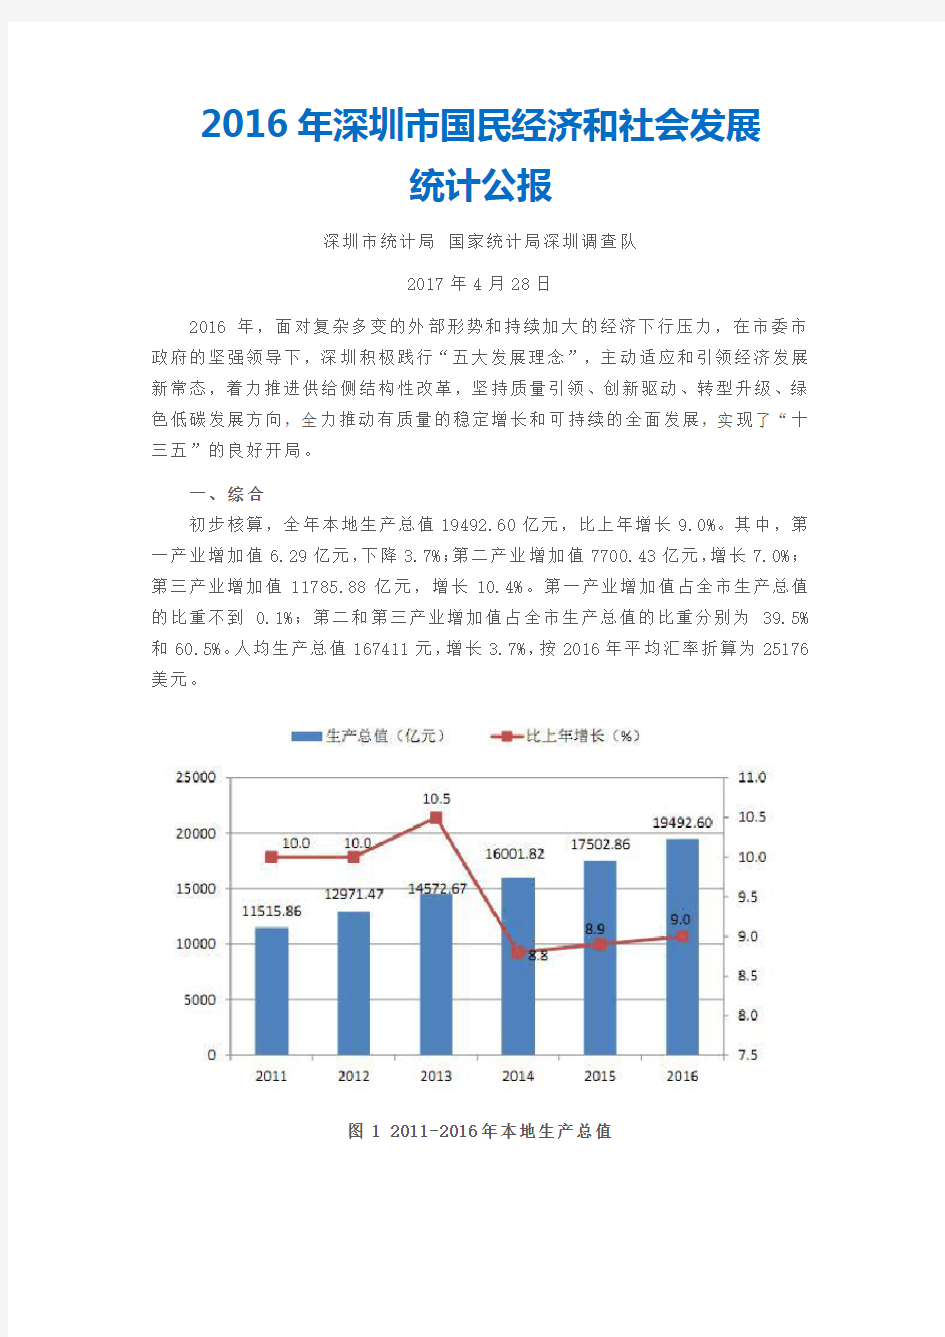 2016深圳市国民经济和社会发展统计公报